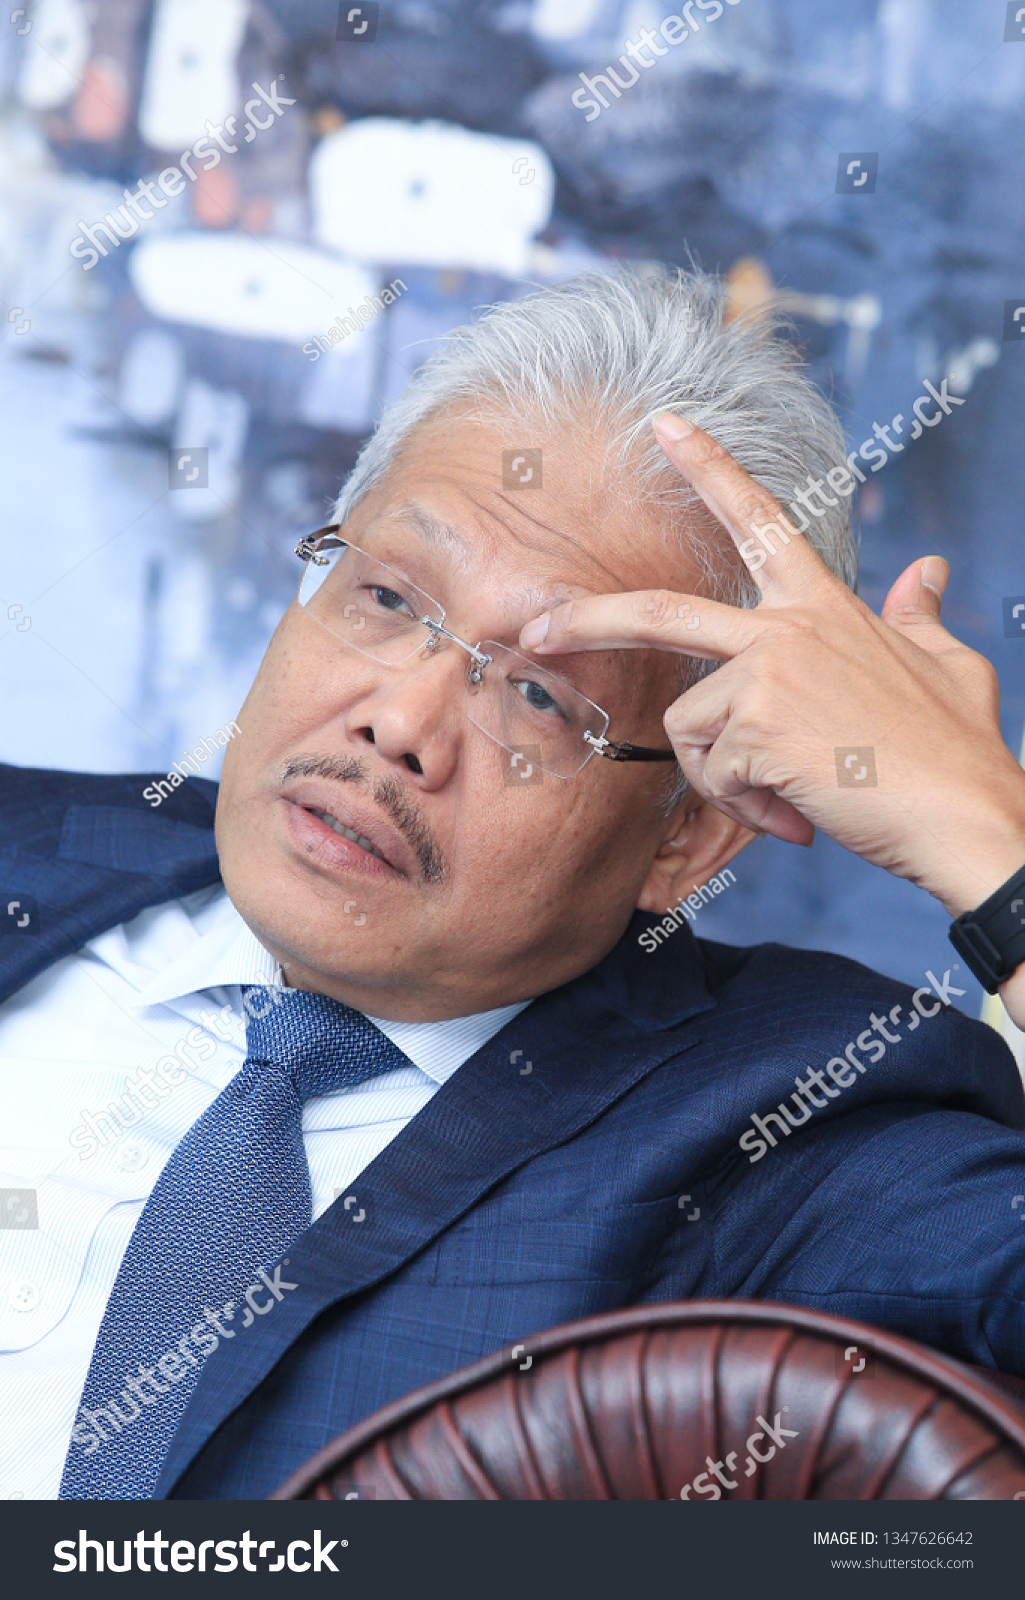 Datuk Seri Hamzah Zainudin